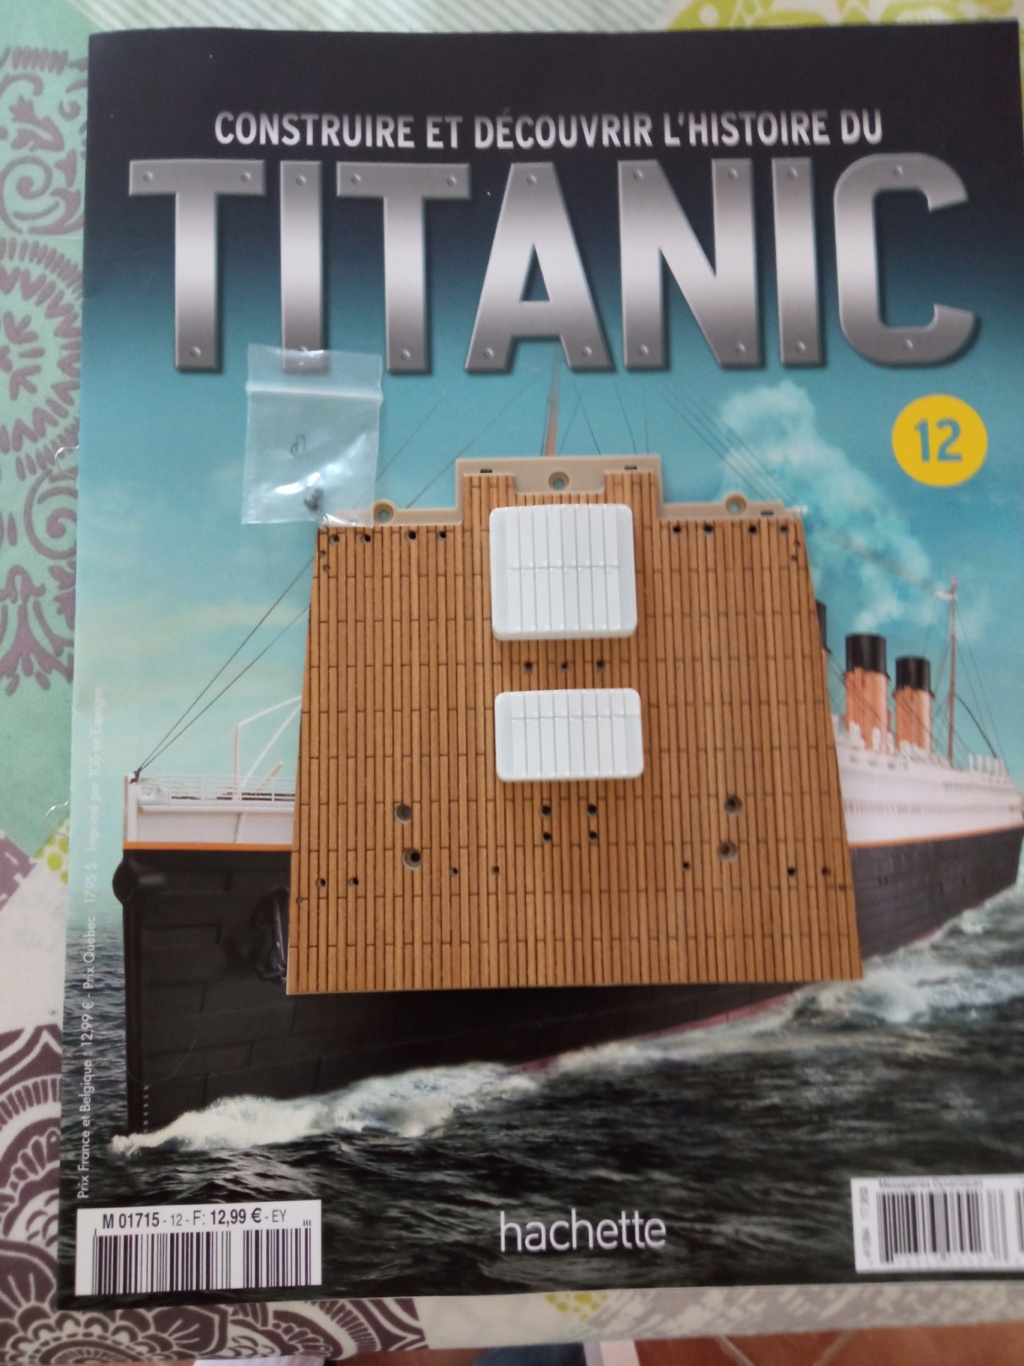 RMS Titanic [Hachette 1/200°] de clg78 - Page 3 12_110